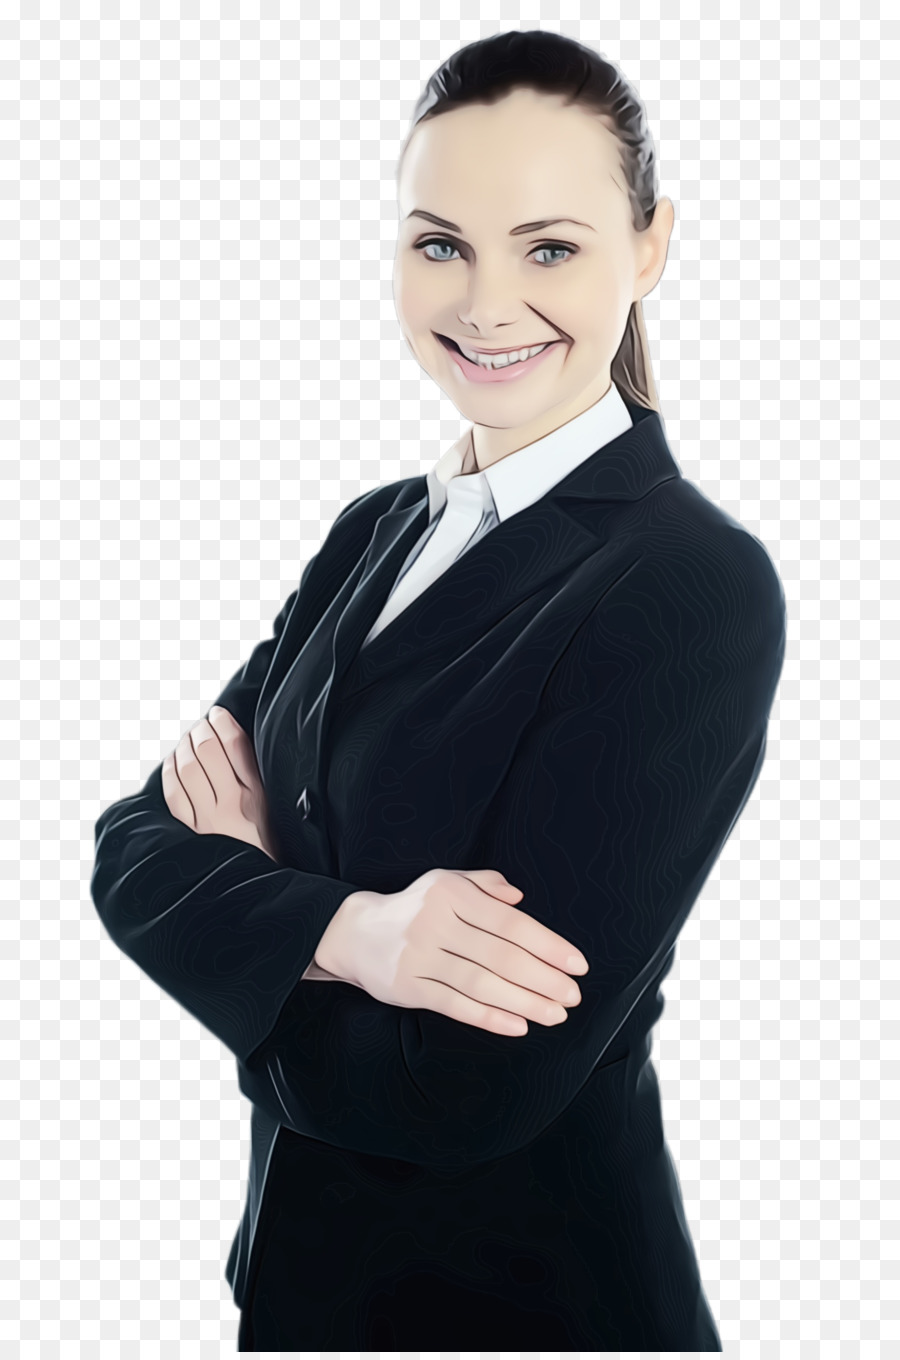 standing white-collar worker businessperson arm formal wear